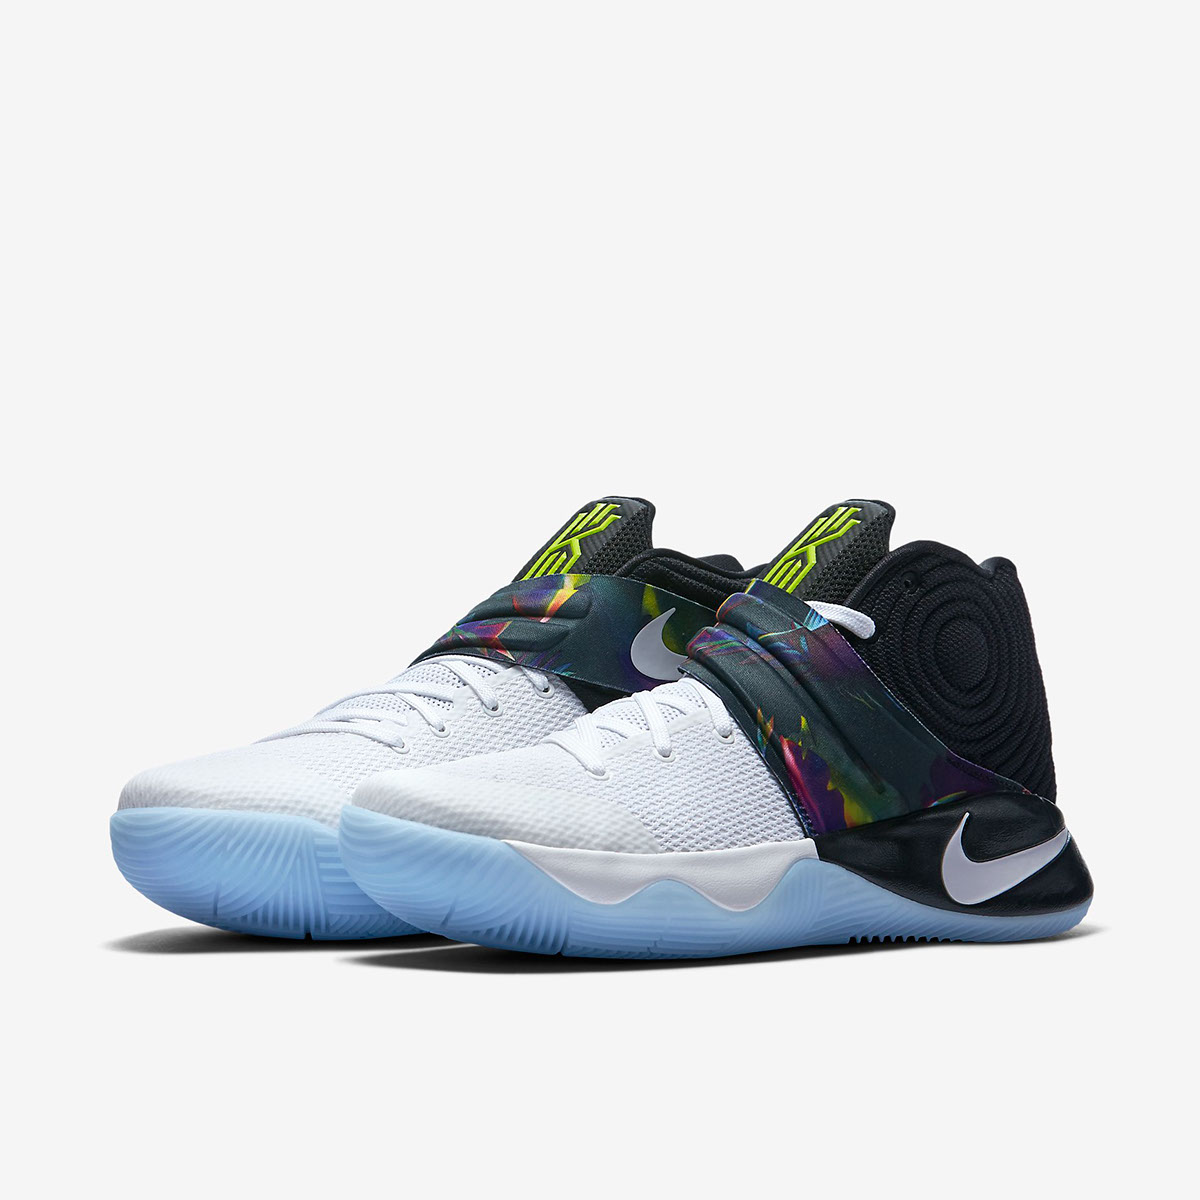 Nike: Shoes of Paradise